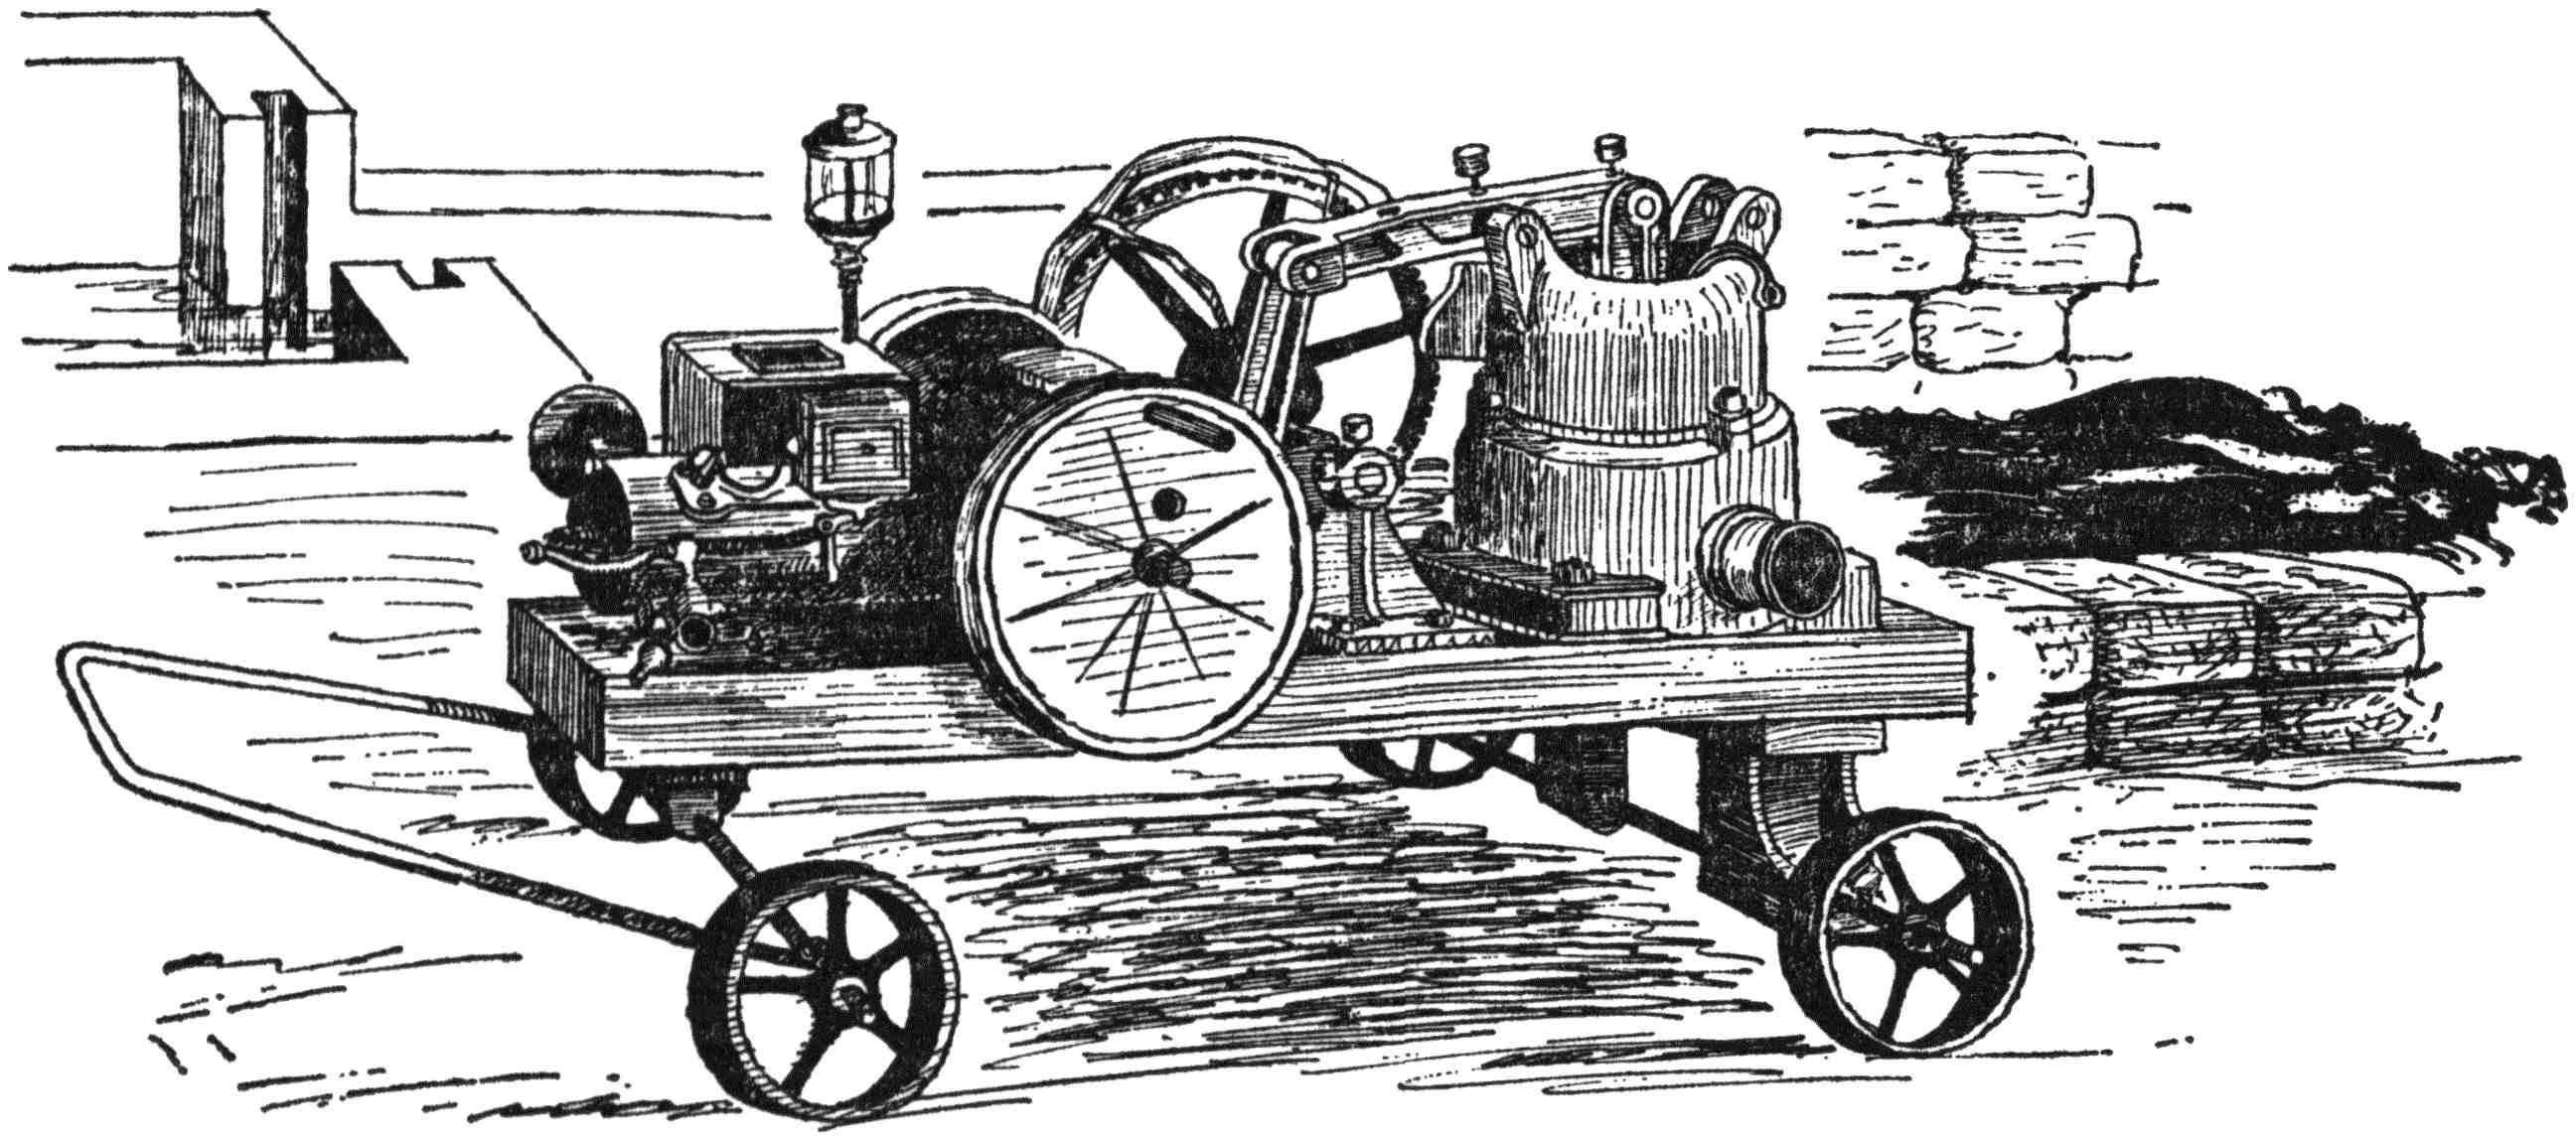 equipment on a cart